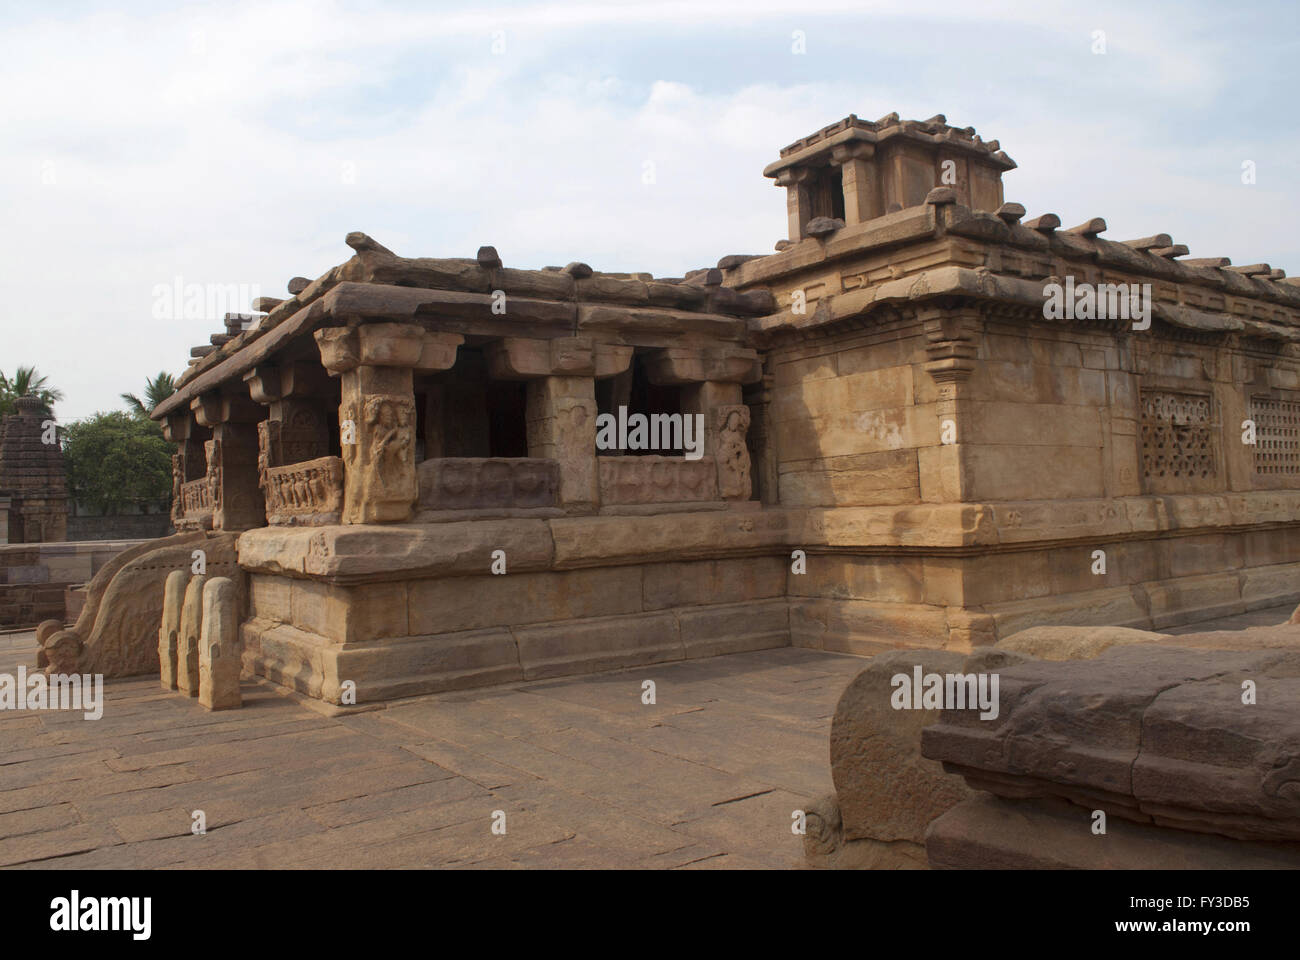 Lad Khan tempio, Aihole, Bagalkot, Karnataka, India. Gruppo Kontigudi dei templi. Questo è il più antico tempio di Aihole. Foto Stock